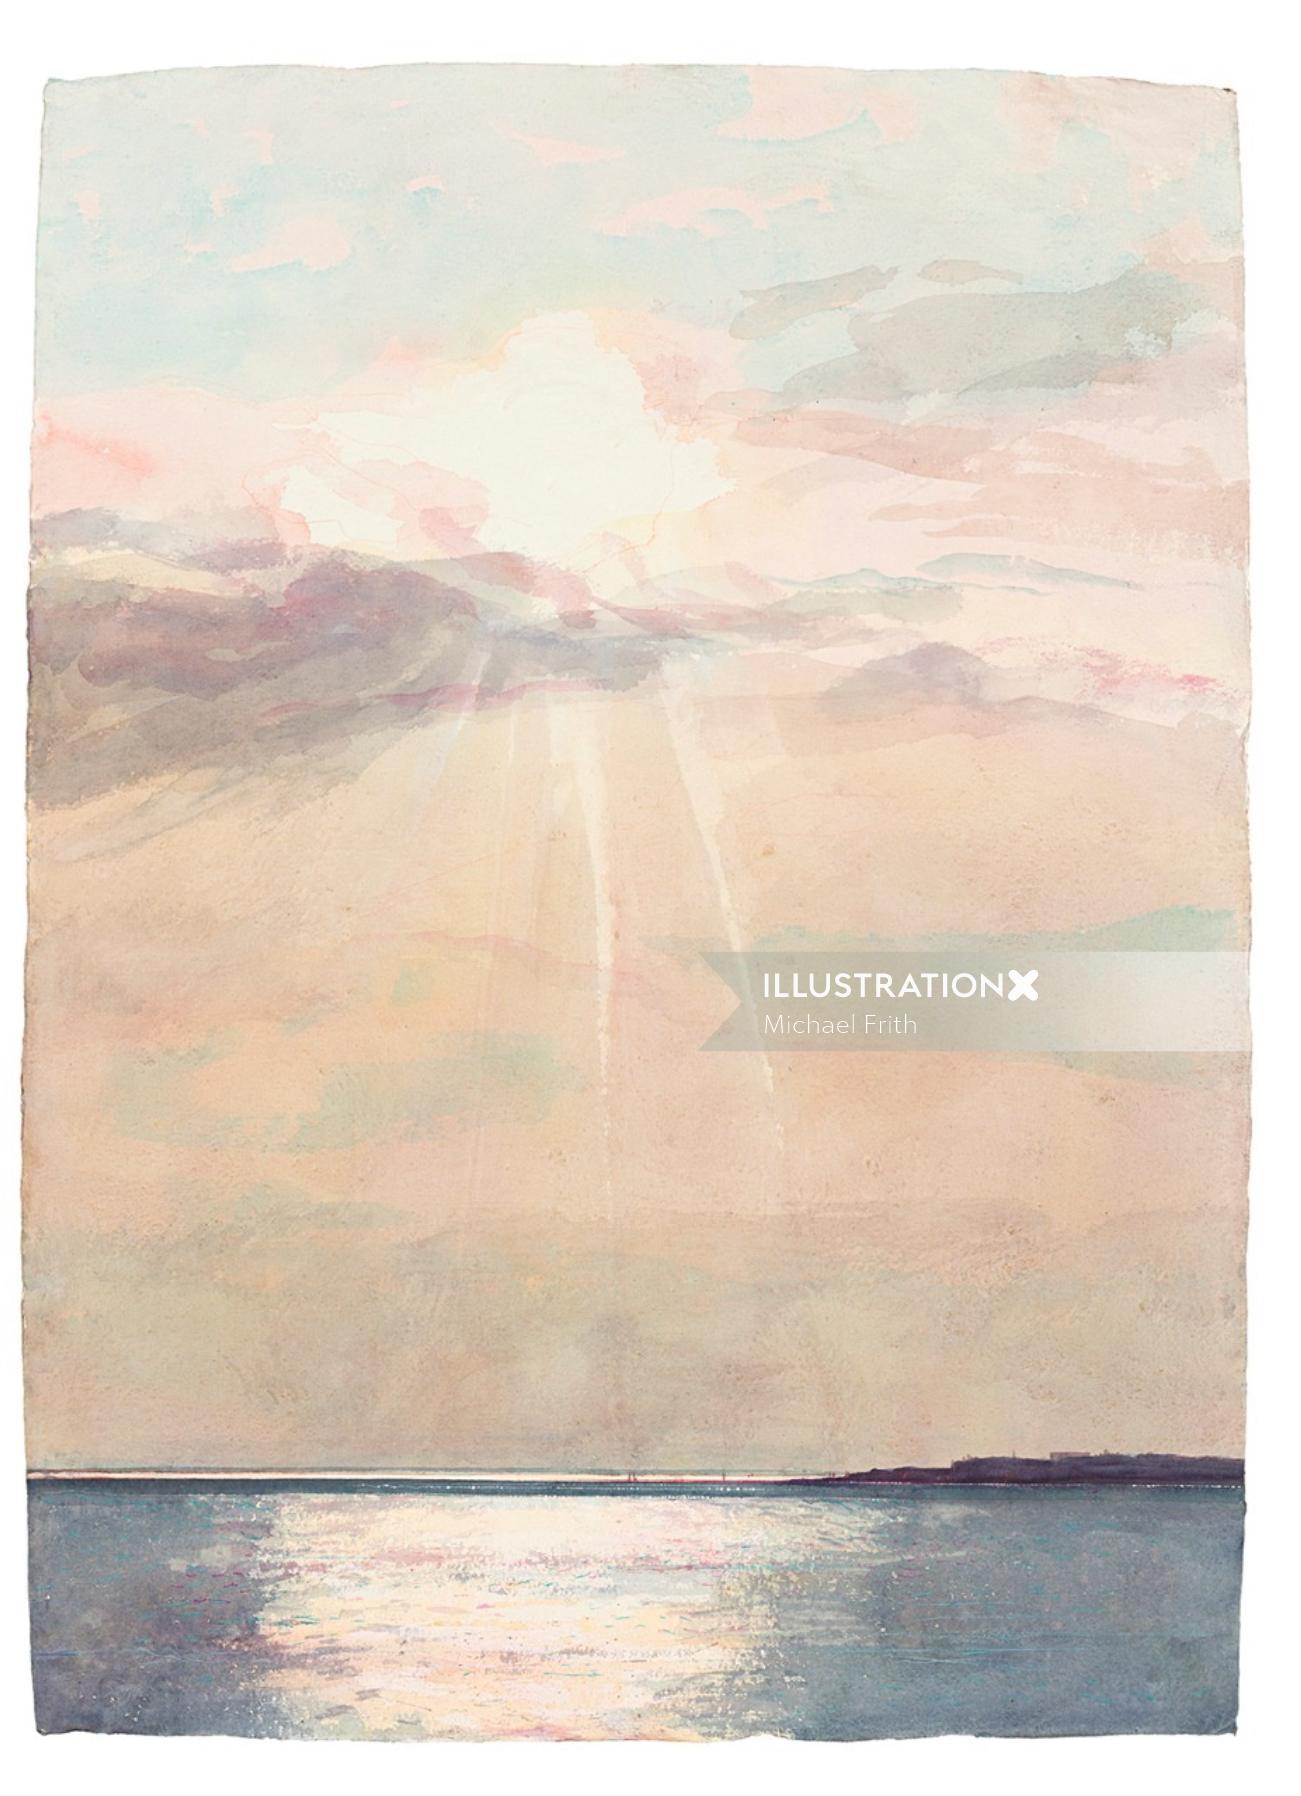 マイケル・フリスによる海景絵画